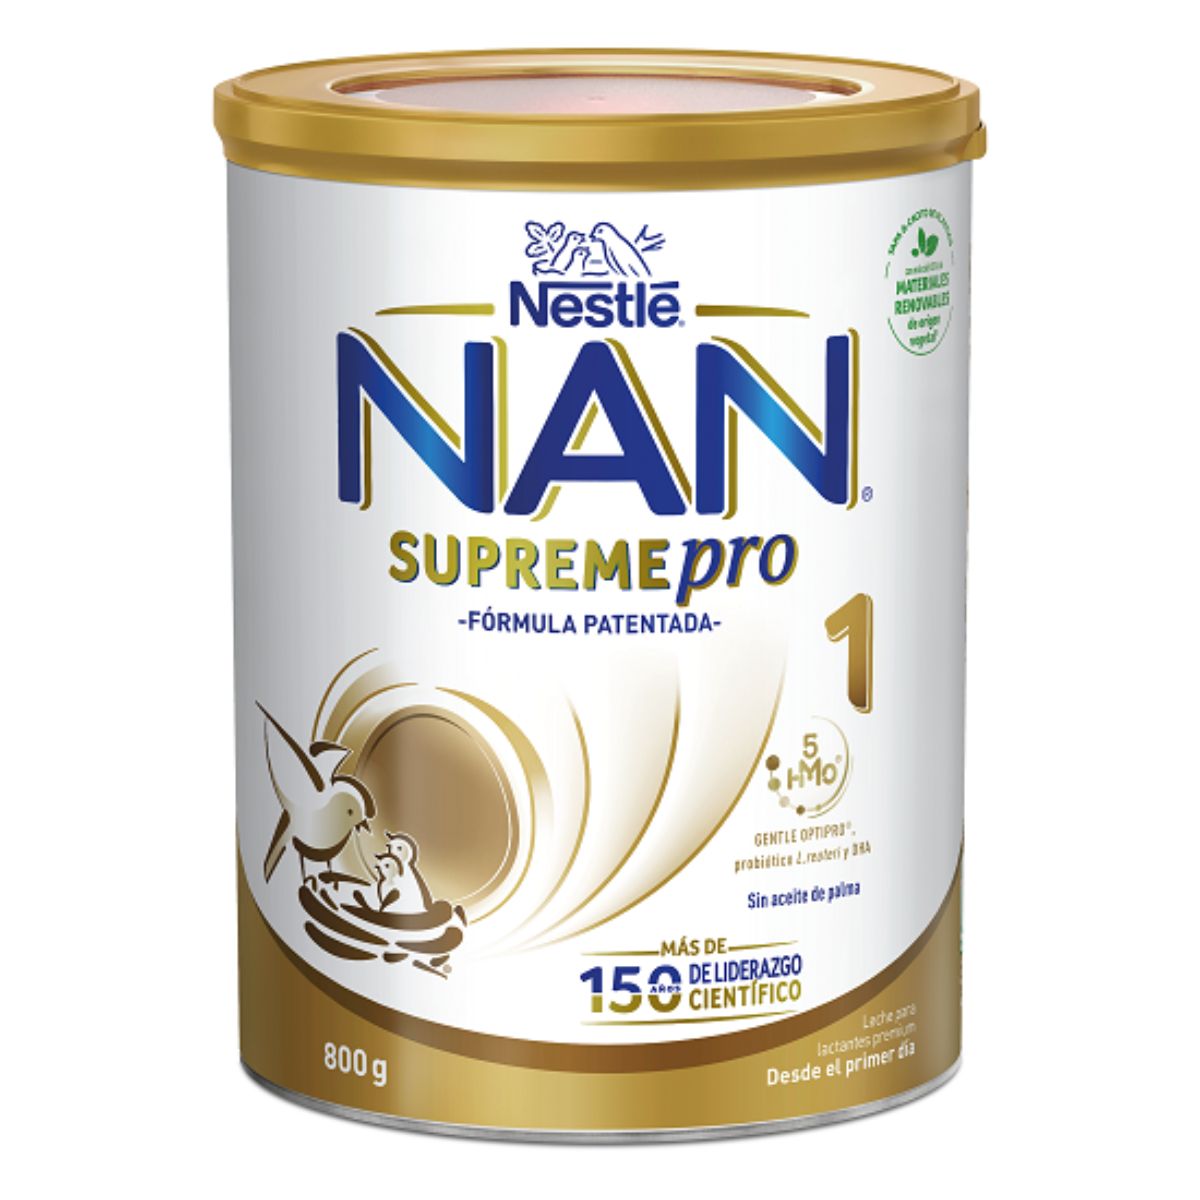 Formula de lapte praf, Nestle, Nan 1 Supreme Pro, 800 g